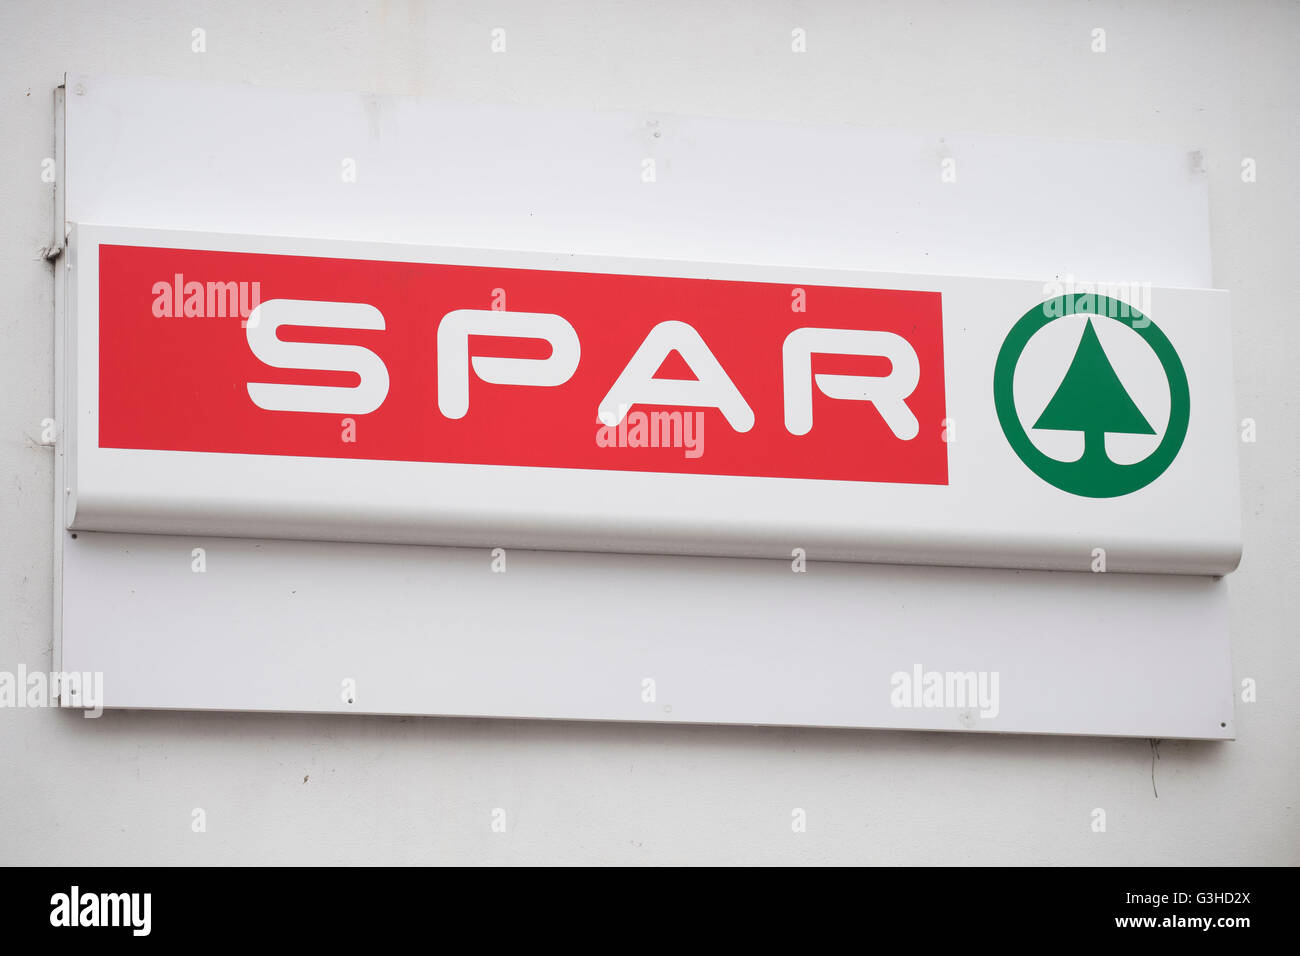 Spar convenience store shop sign logo. Stock Photo